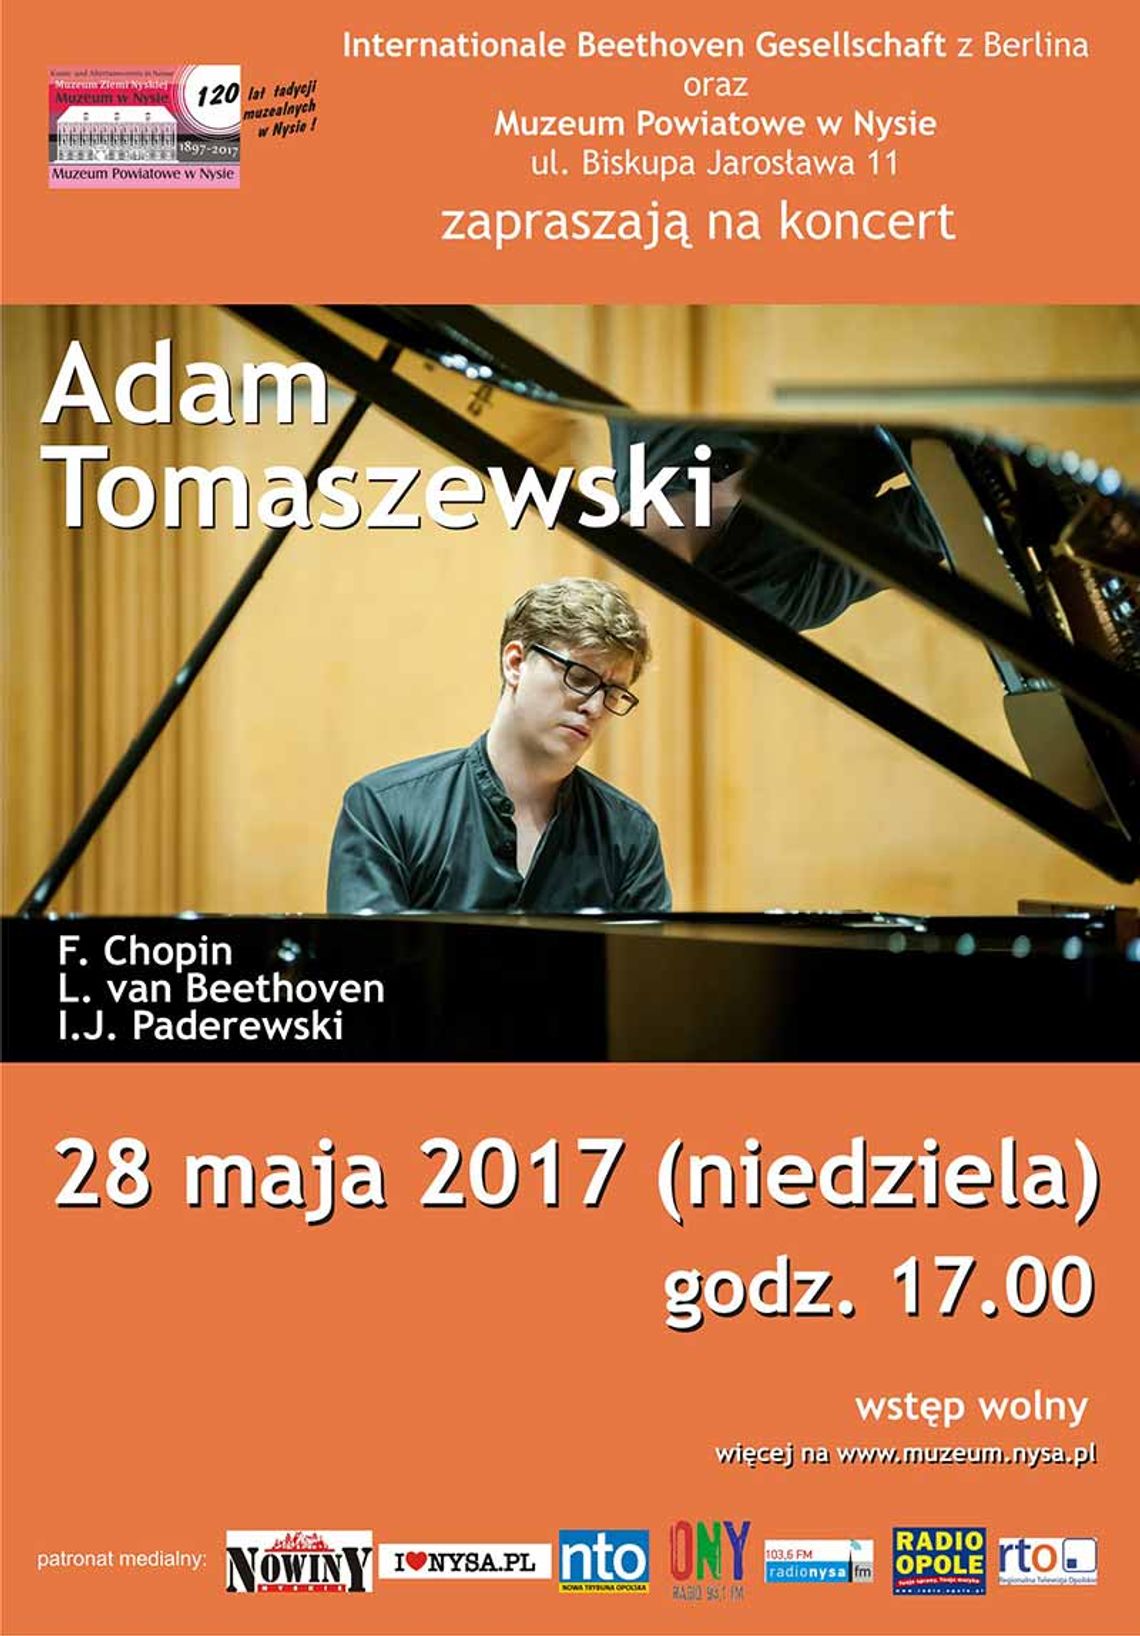 KONCERT ODWOŁANY - Muzeum zaprasza na koncert fortepianowy w wykonaniu Adama Tomaszewskiego